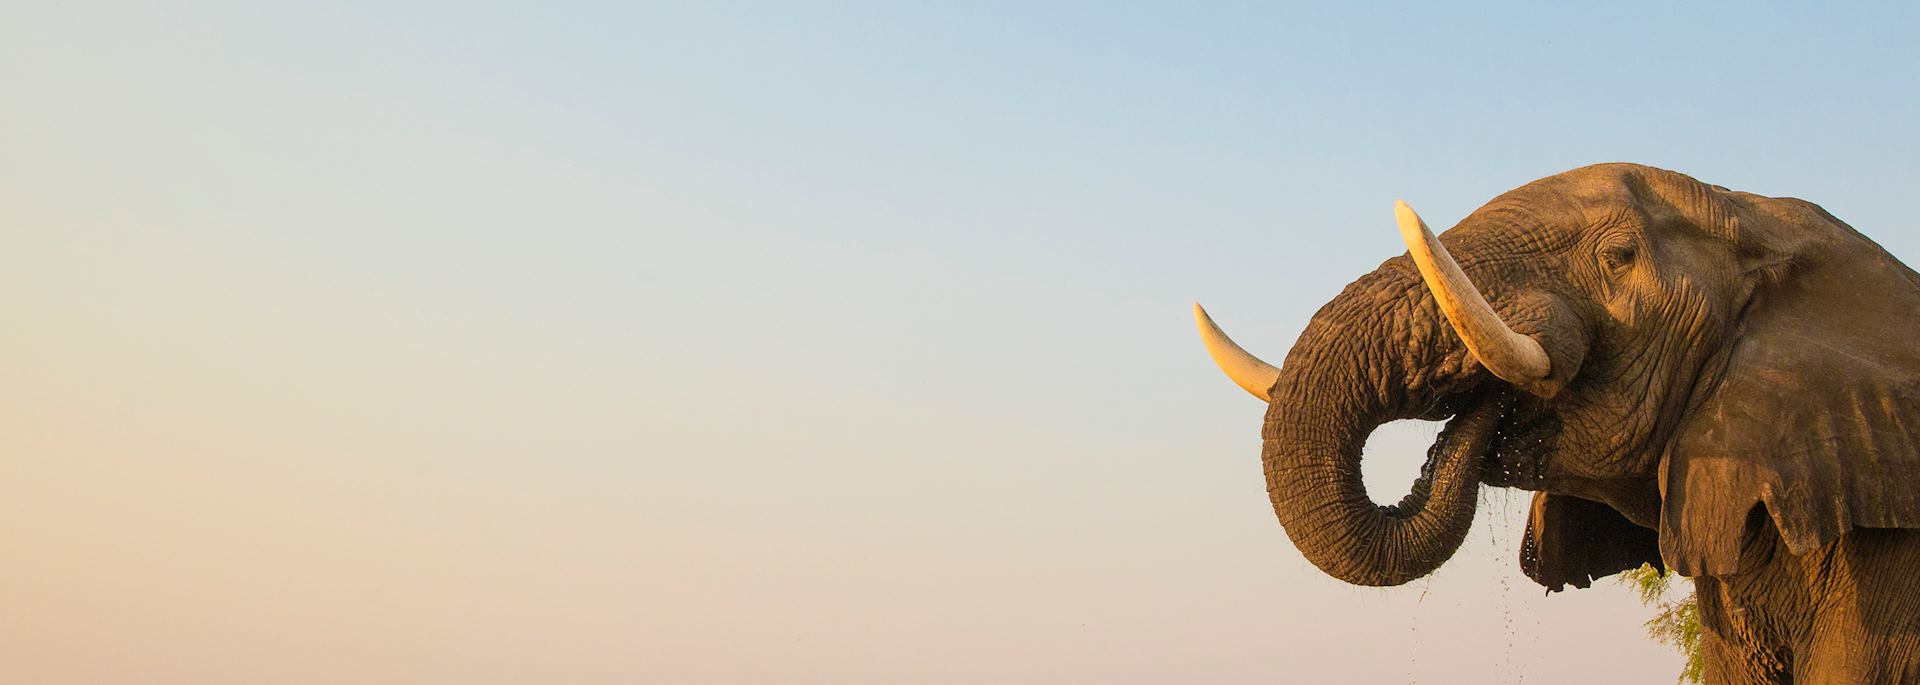 Bull elephant drinking at the Zambezi river